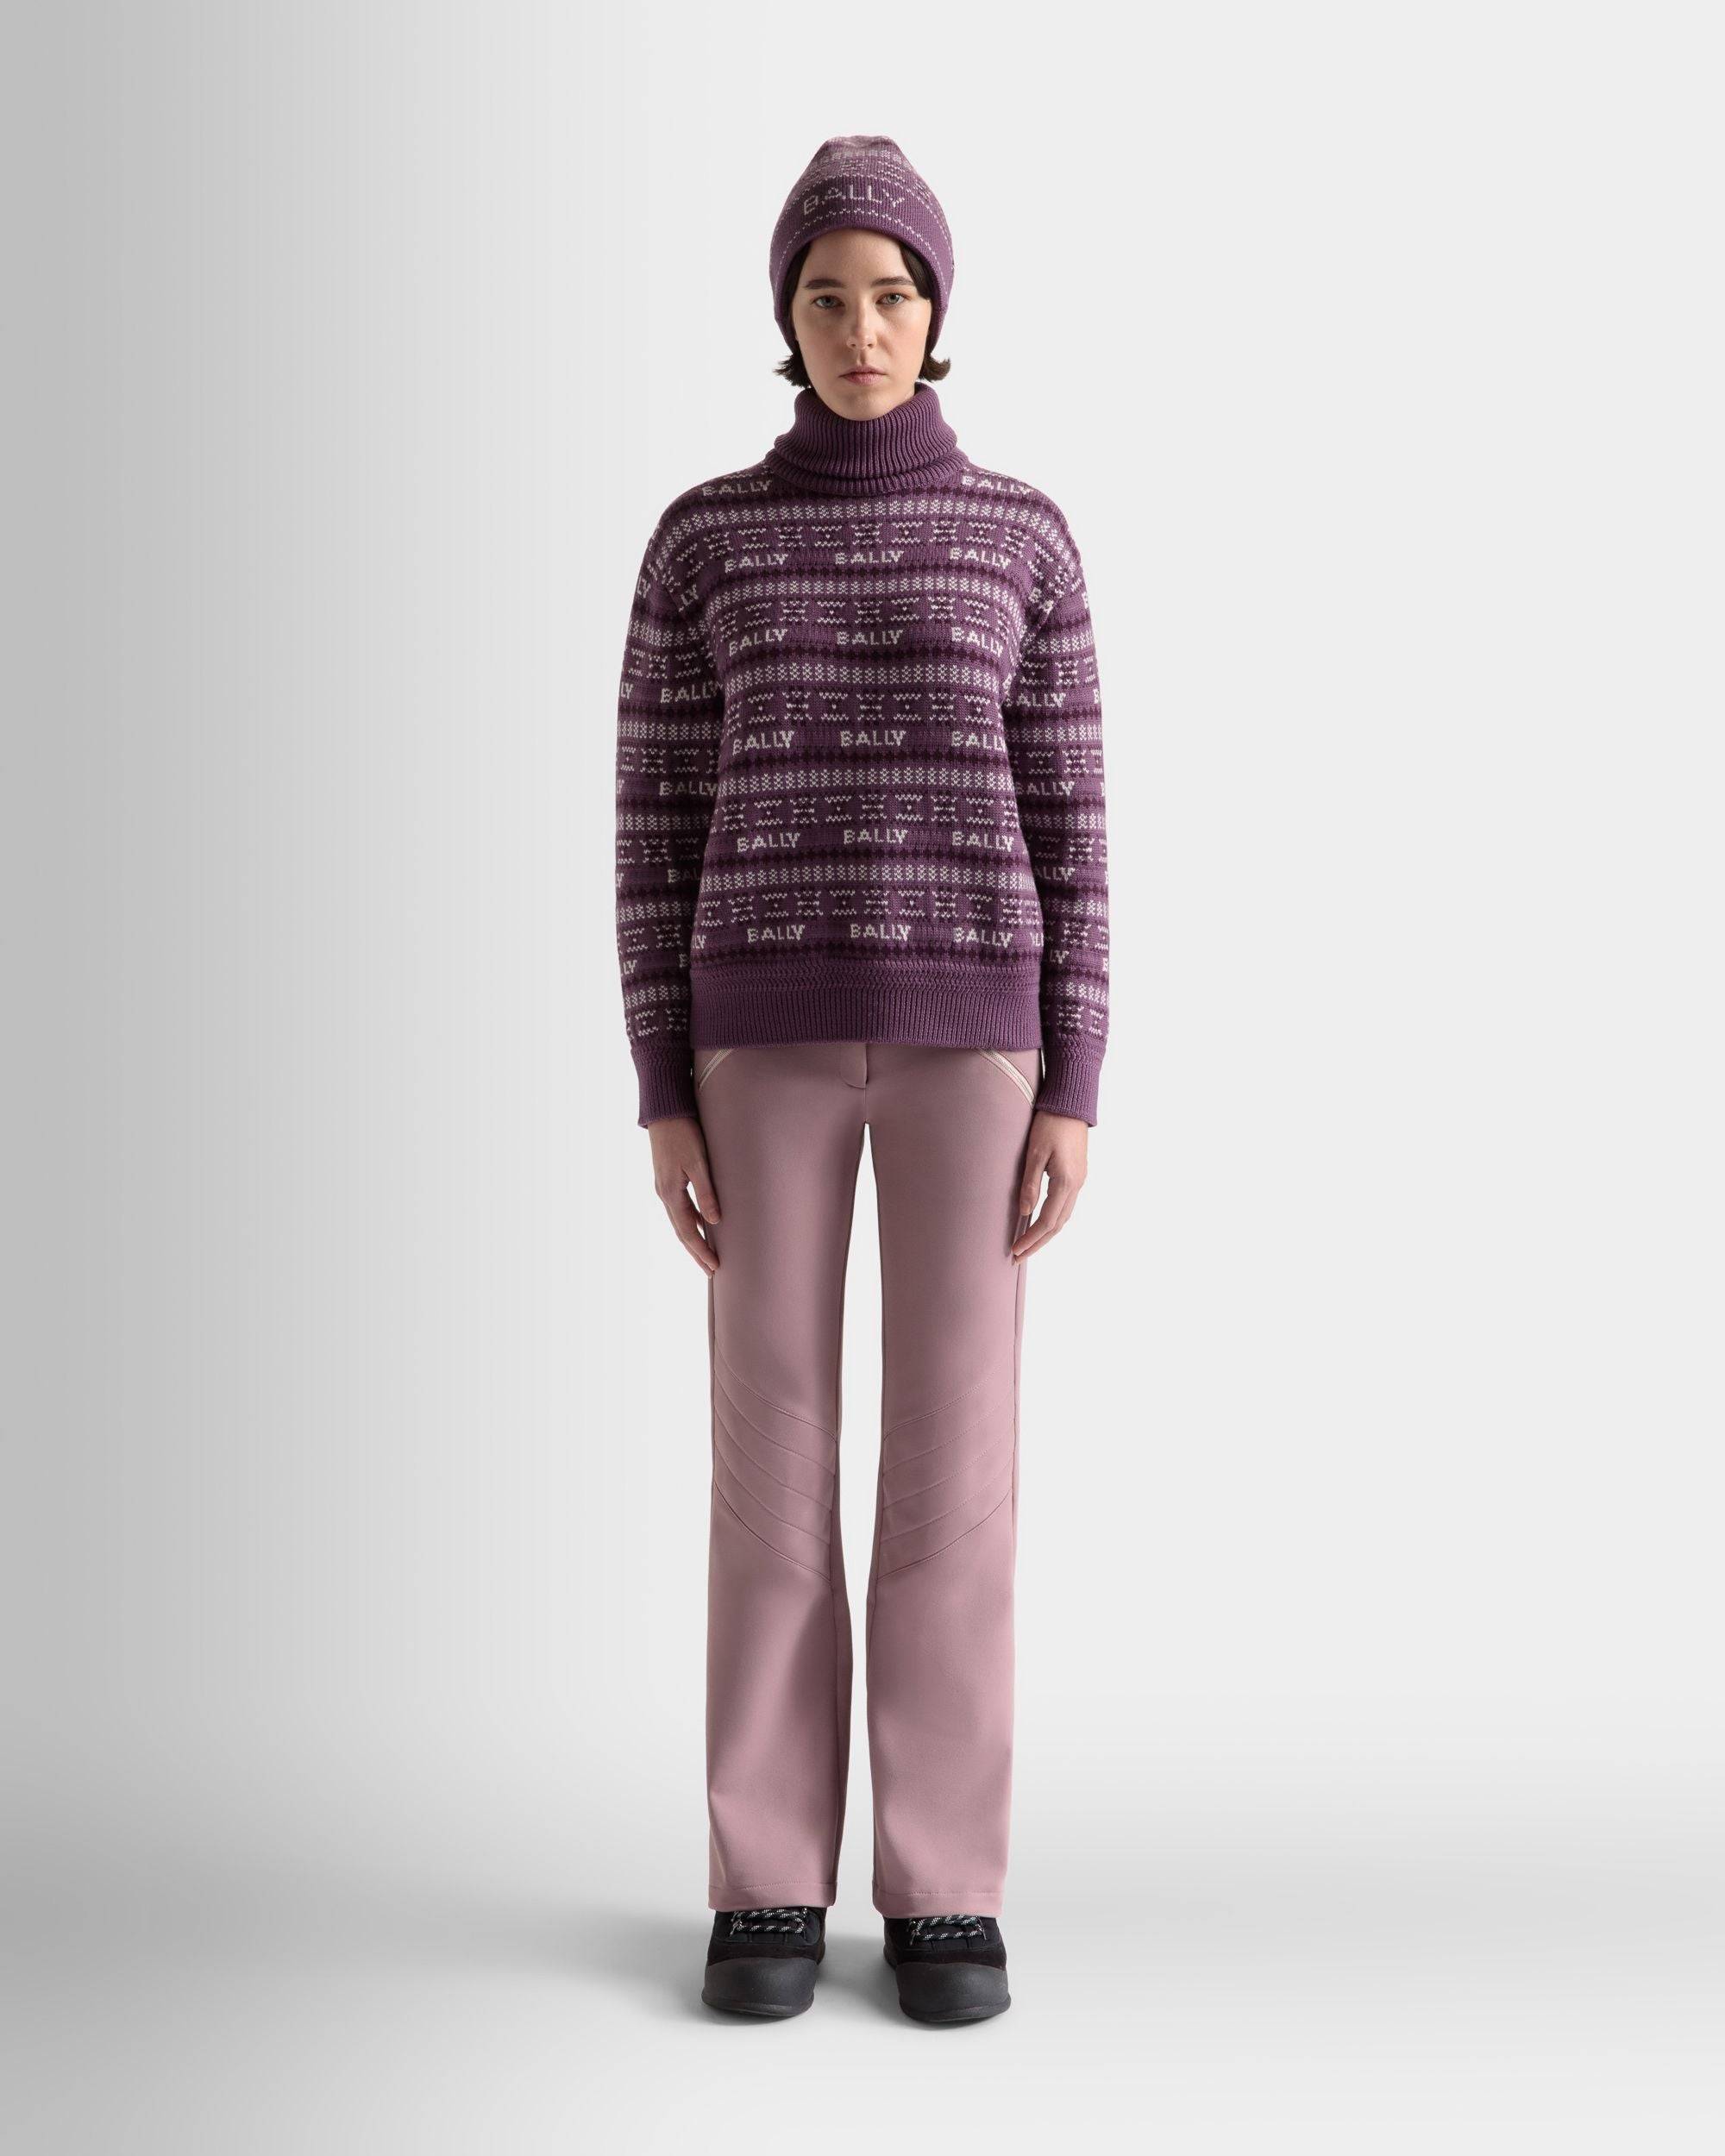 Damen-Rollkragenpullover aus lila Wolle | Bally | Model getragen Vorderseite